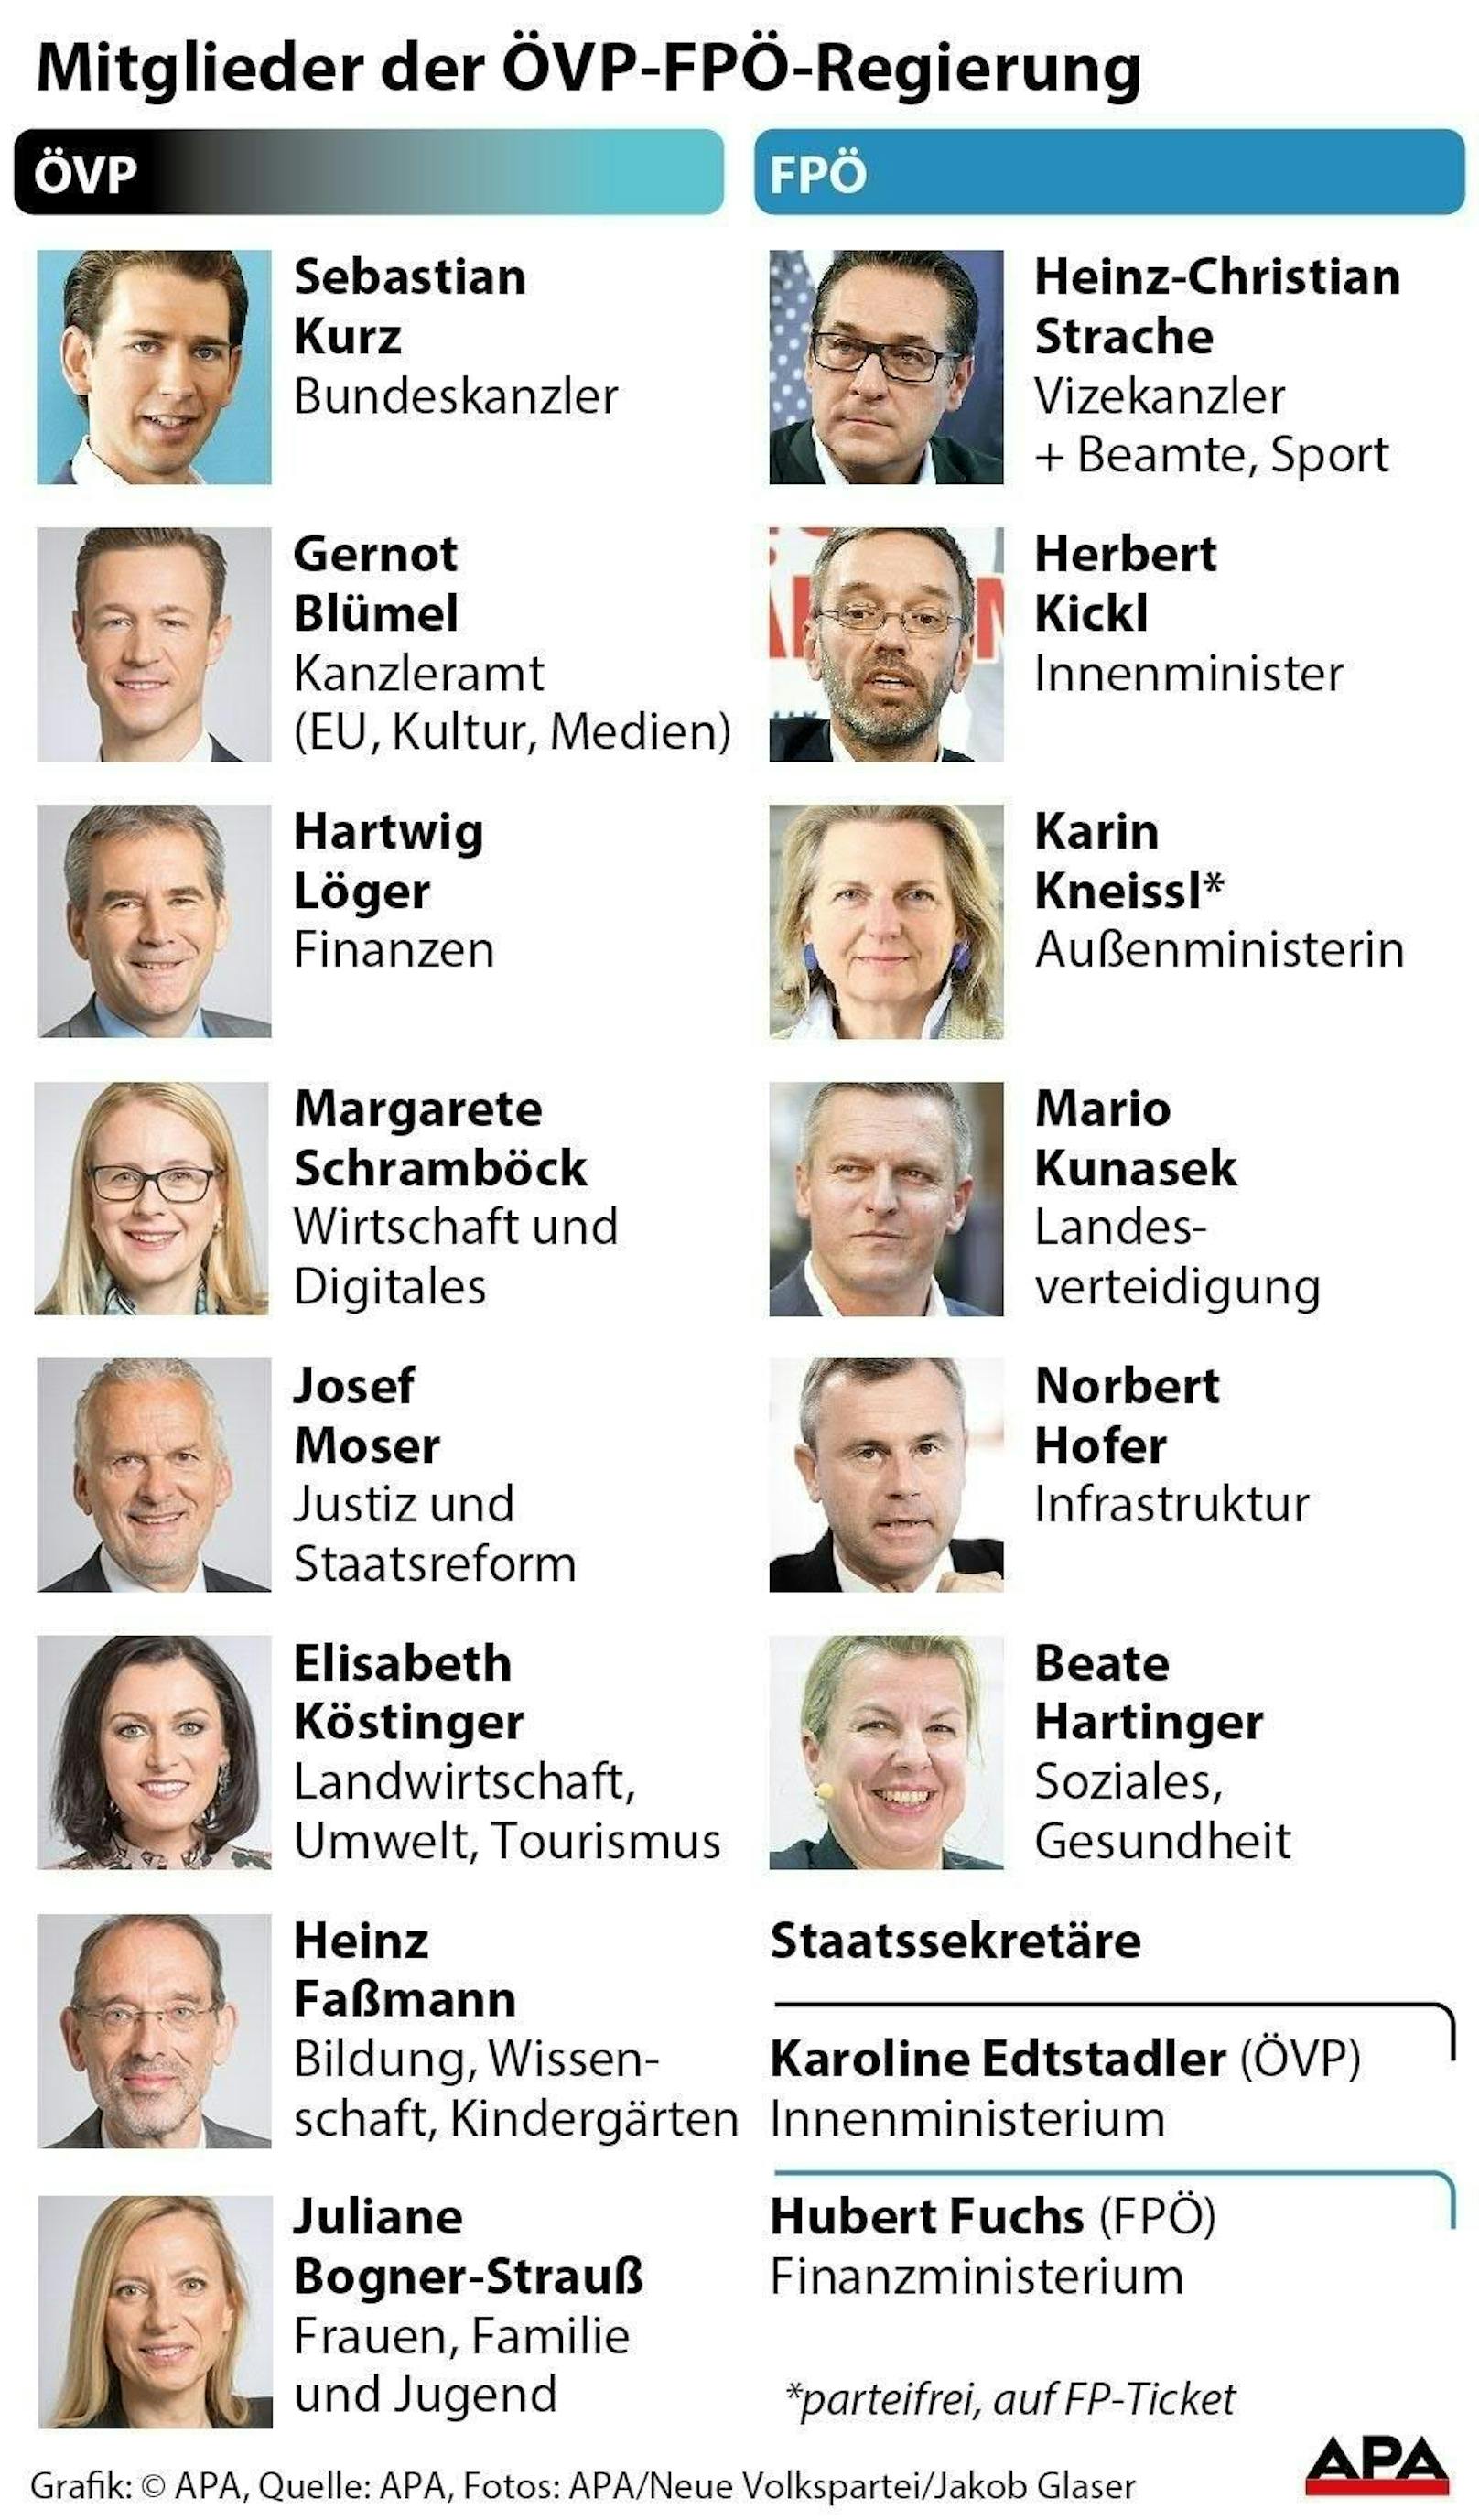 Die Regierungsmitglieder von ÖVP und FPÖ unter Bundeskanzler Sebastian Kurz mit ihren Zuständigkeiten. Stand: 16. Dezember 2017.